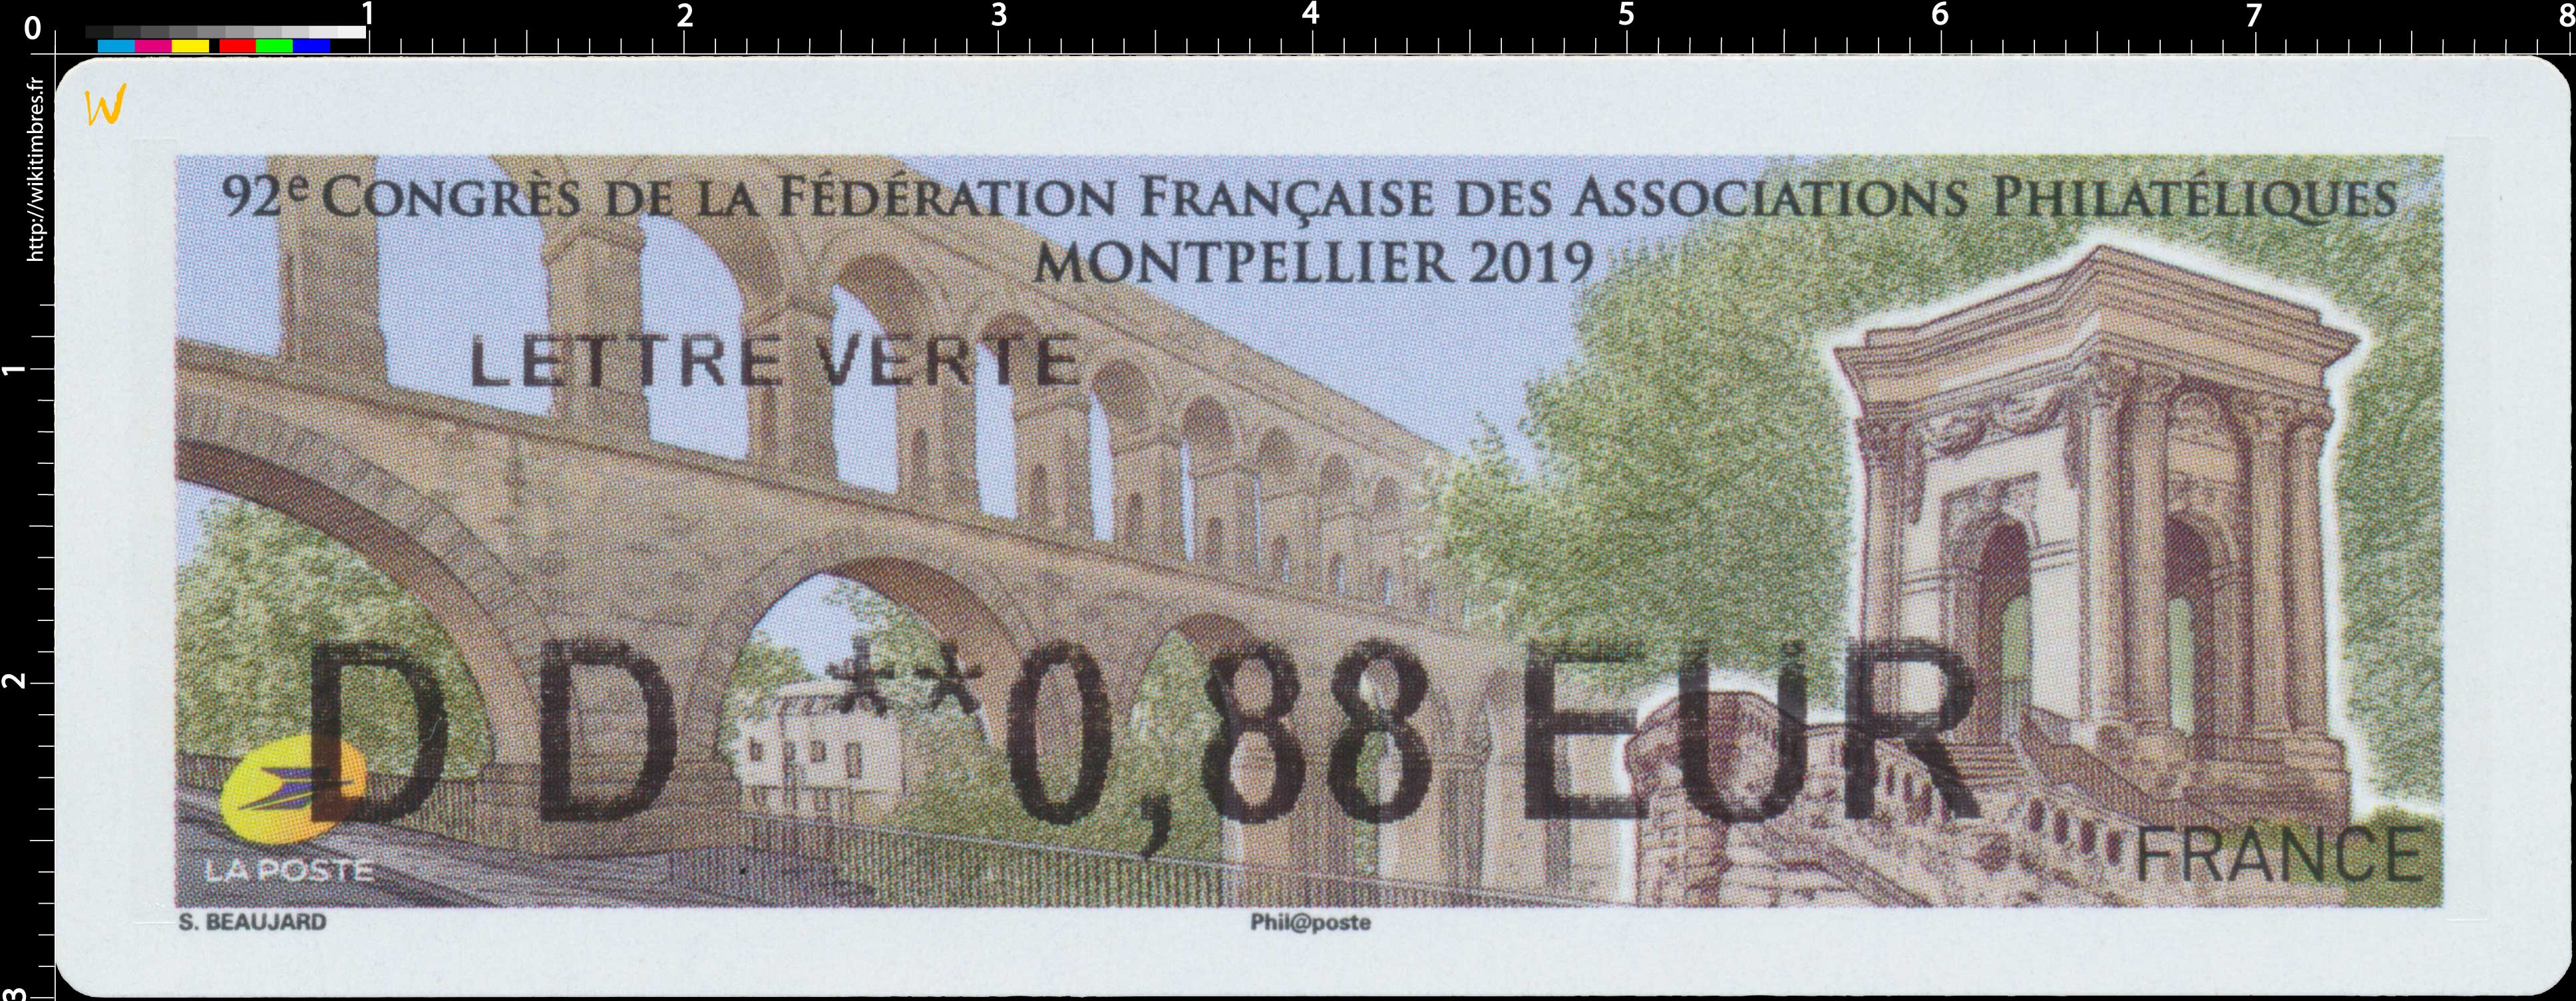 2019  92e Congrès de la fédération française des associations philatéliques - Montpellier